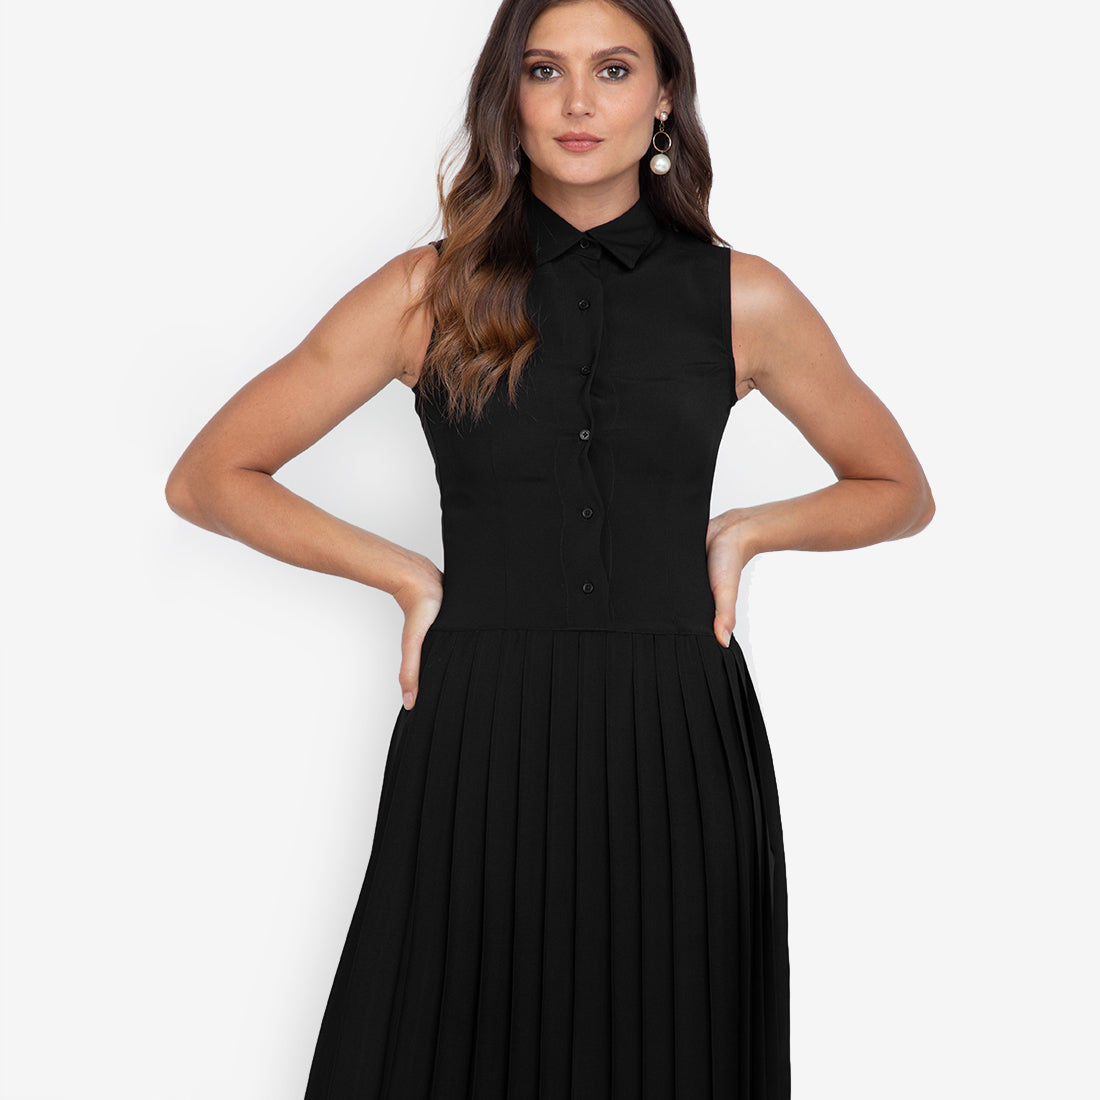 Earle Pleated Dress in Black